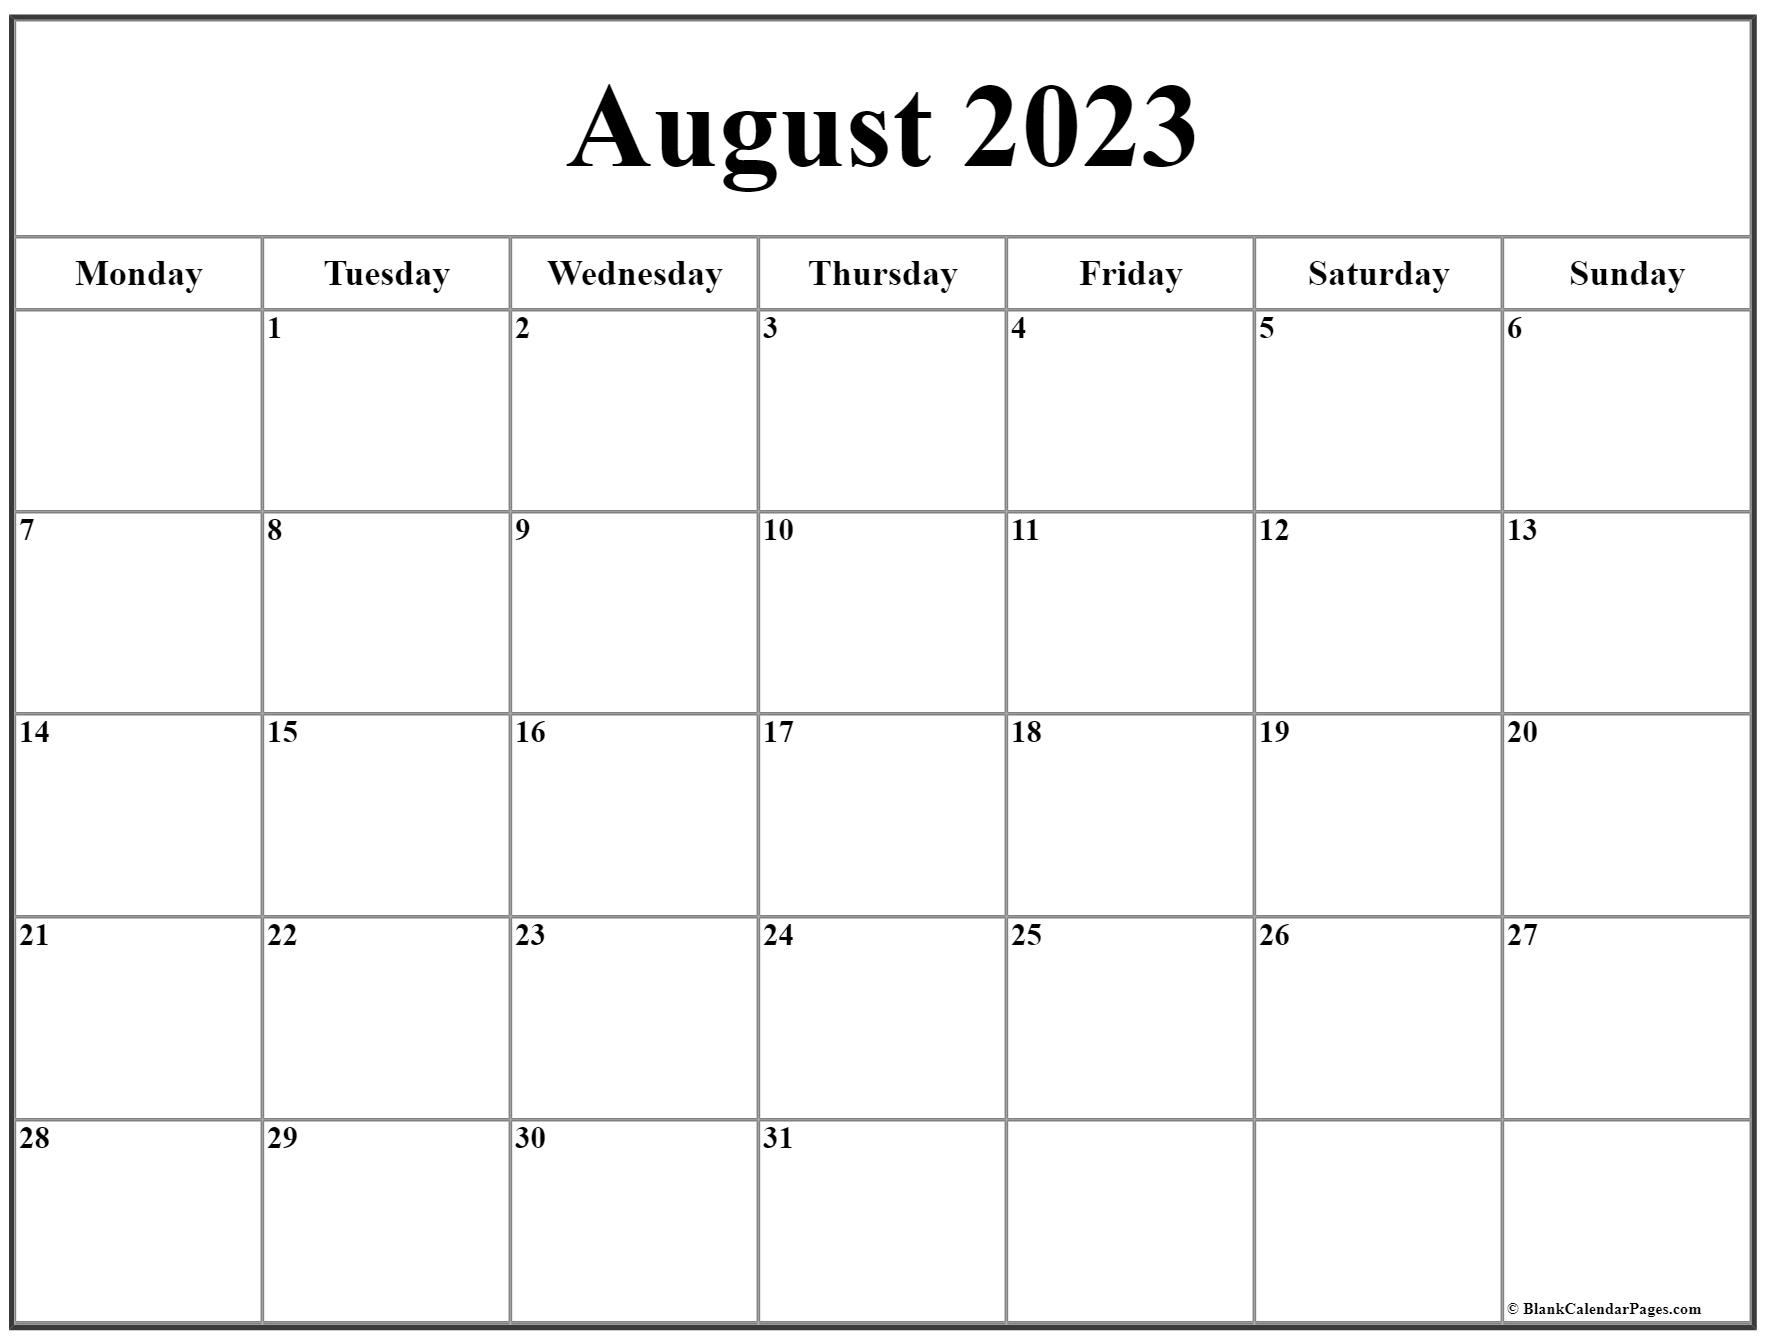 august-2023-calendar-start-on-monday-get-calendar-2023-update